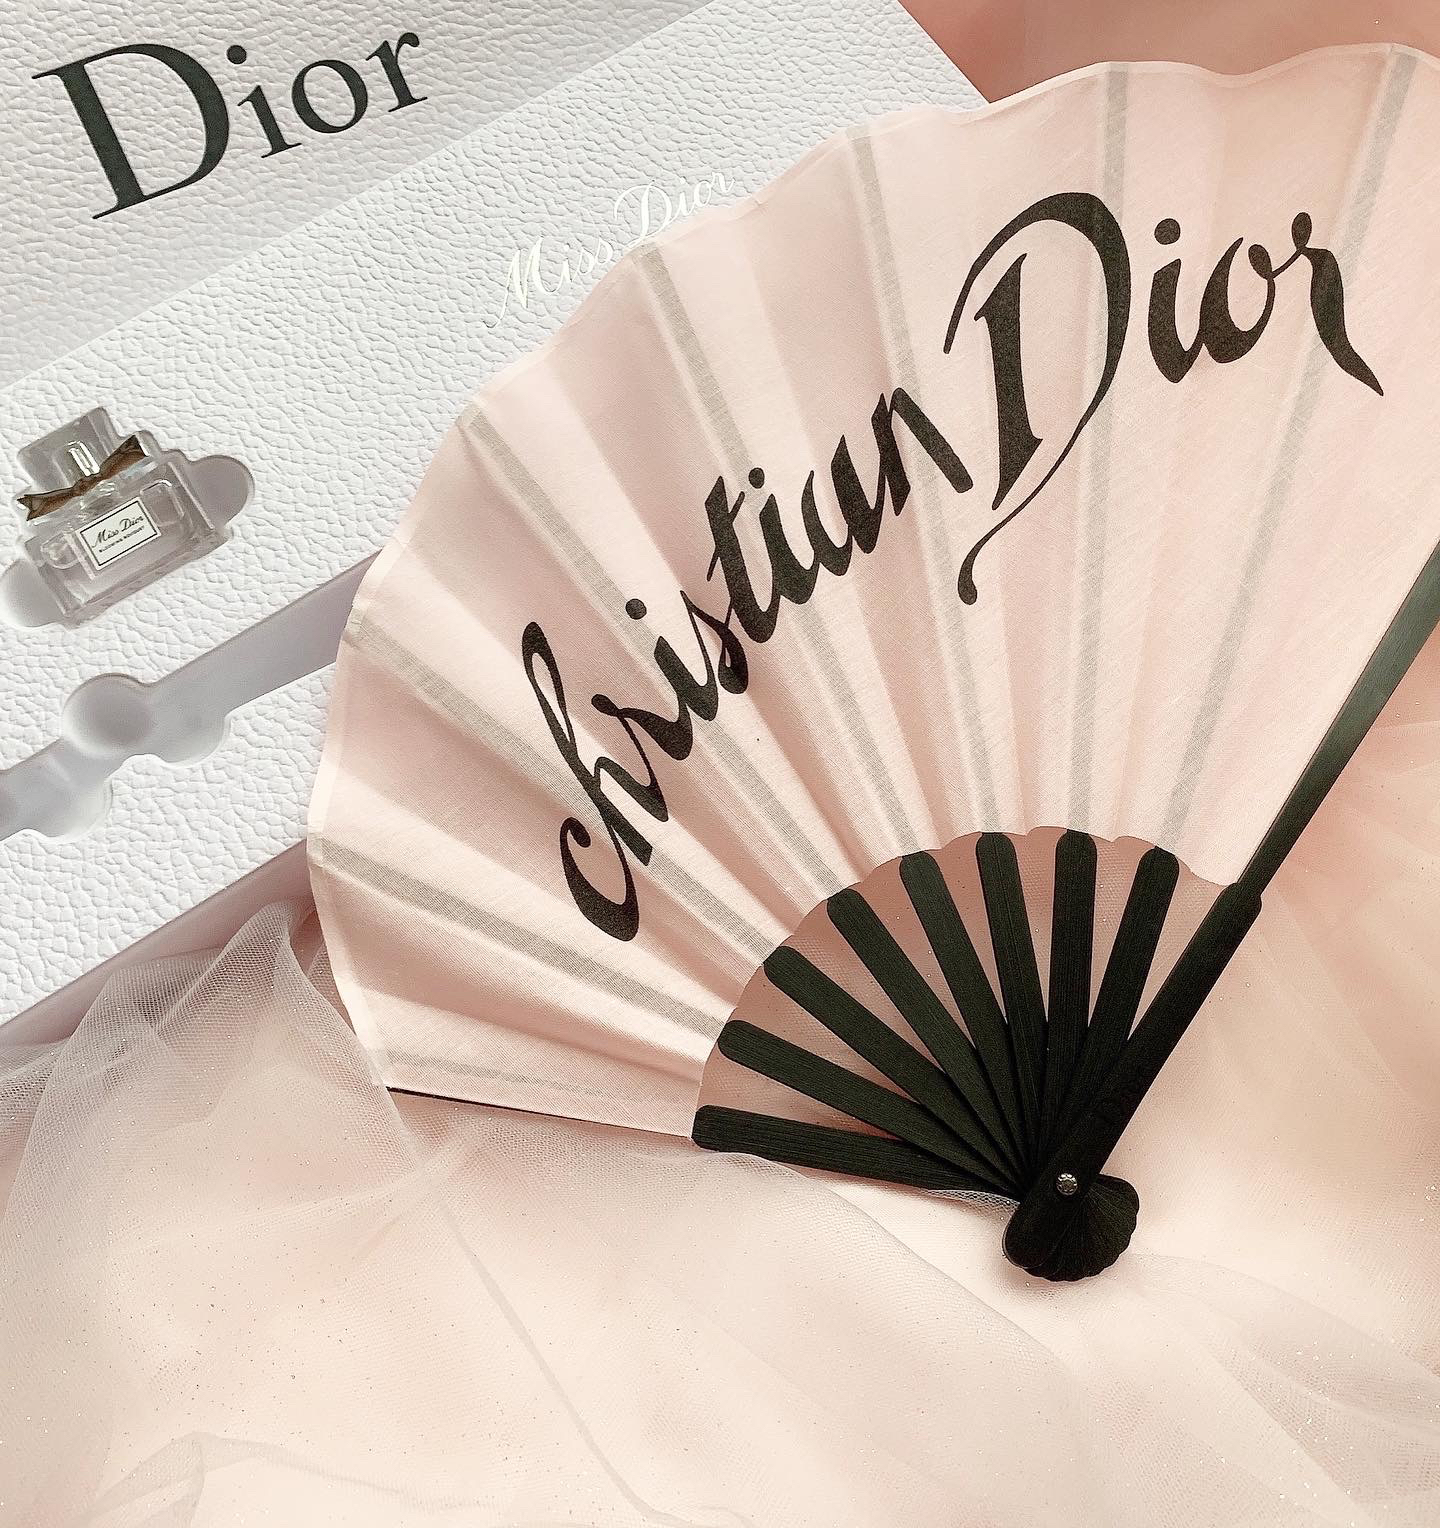 オンラインショップ Dior ミスディオール ギフトセット ノベルティー 扇子 香水 非売品 en-dining.co.jp